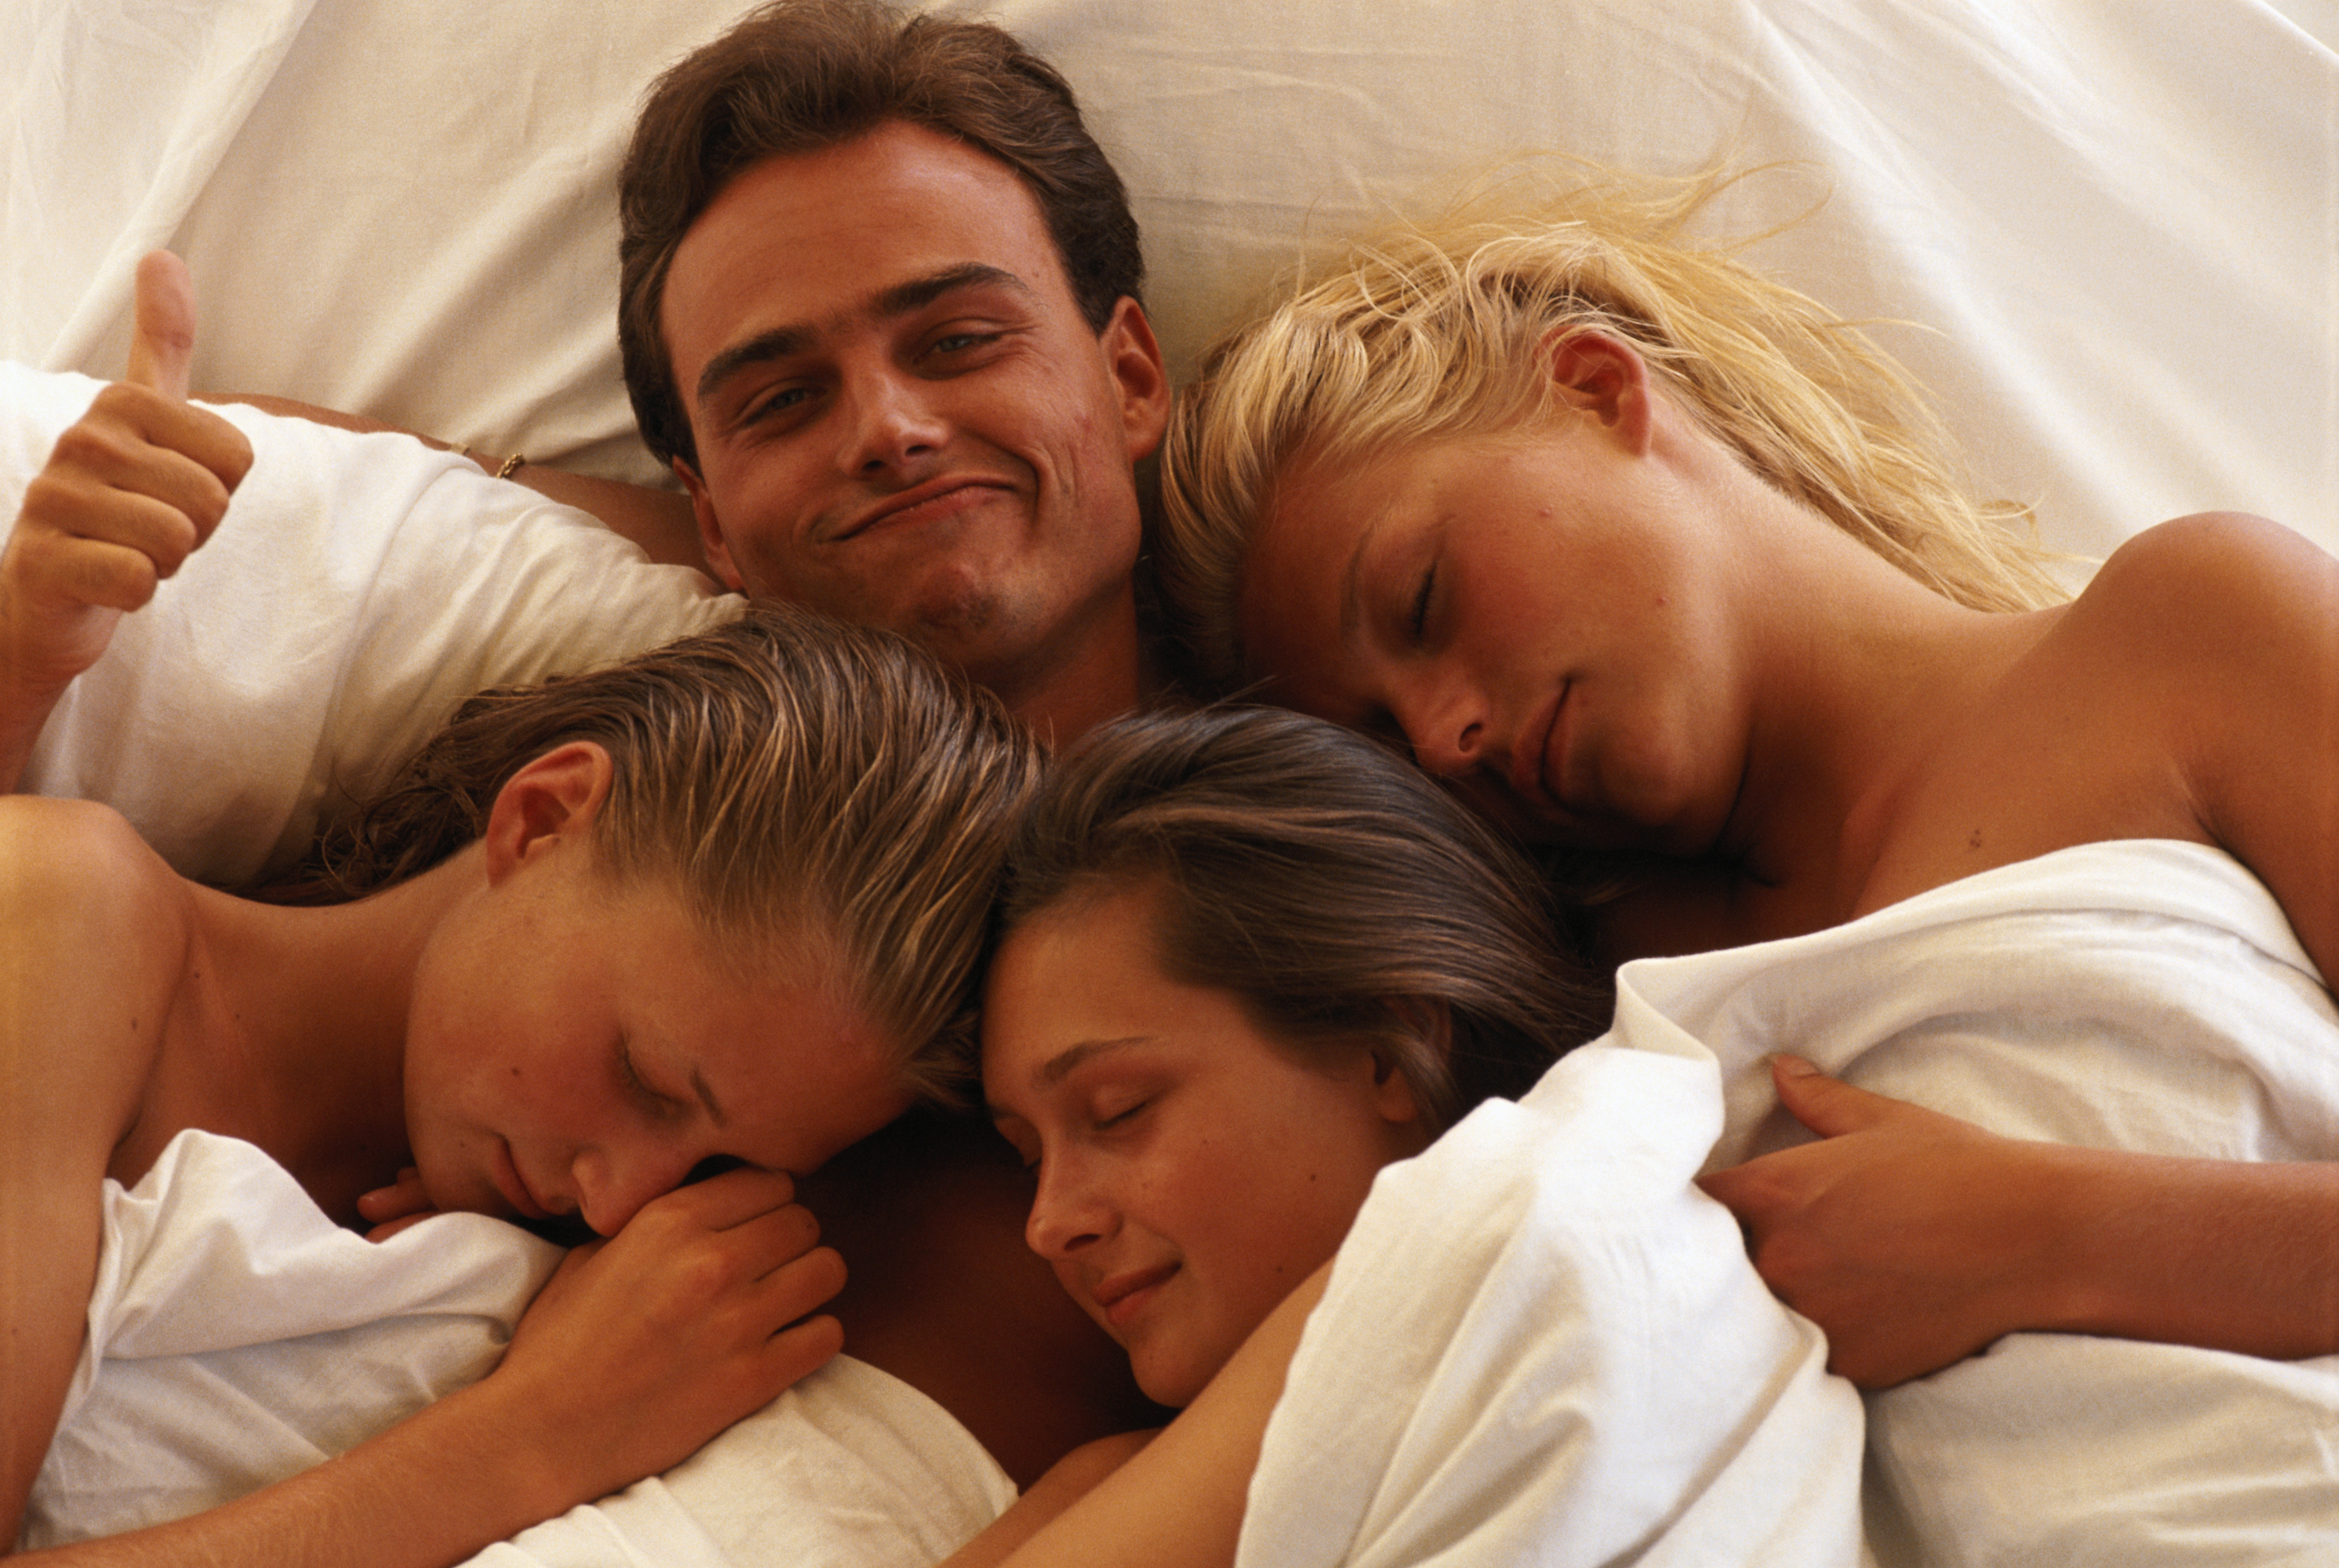 Свинг подруга. Мужчина с двумя девушками в кровати. Семейная пара в постели. Три мужчины и одна женщина. Несколько девушек в кровати.